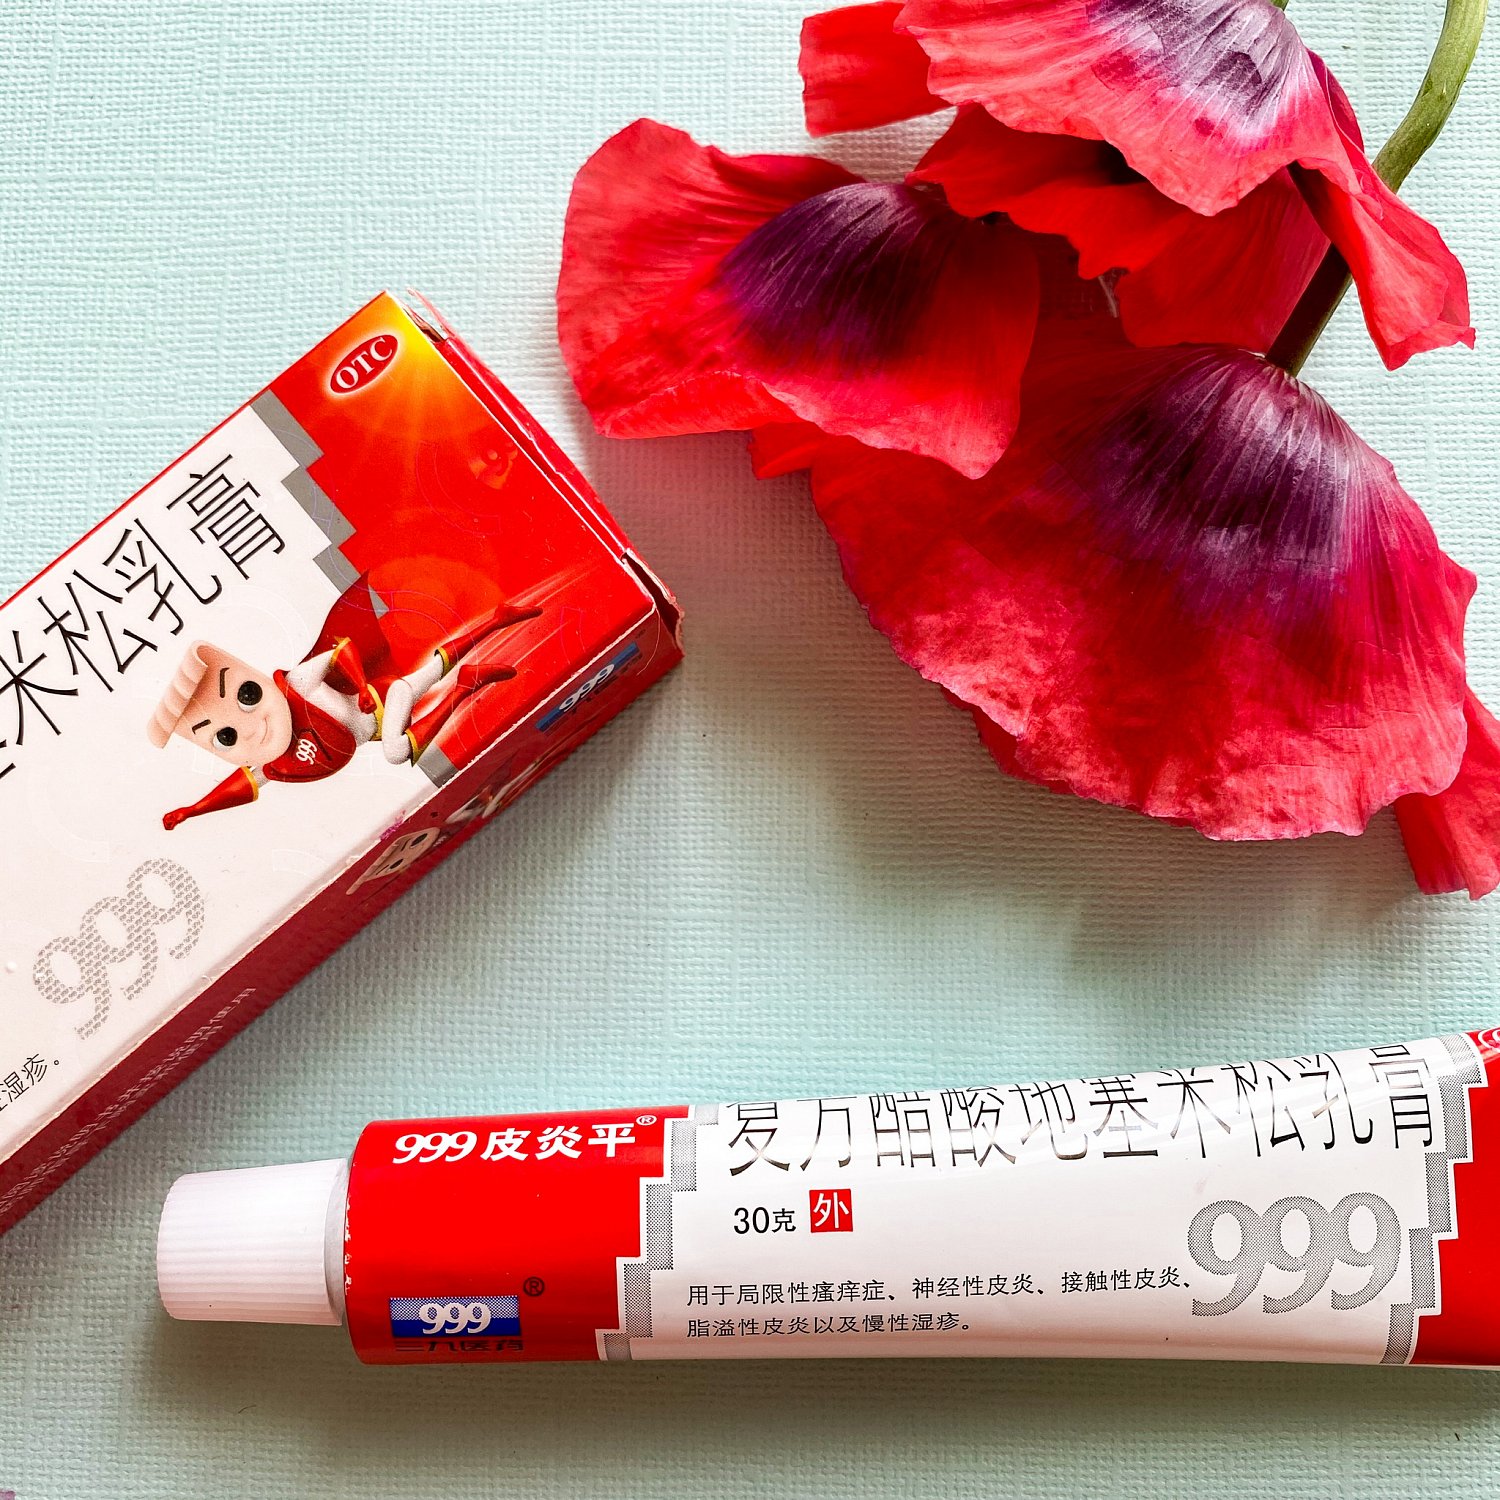 картинка Мазь "Пианпин 999" для лечения дерматозов, дерматитов, экземы от магазина MamaMao